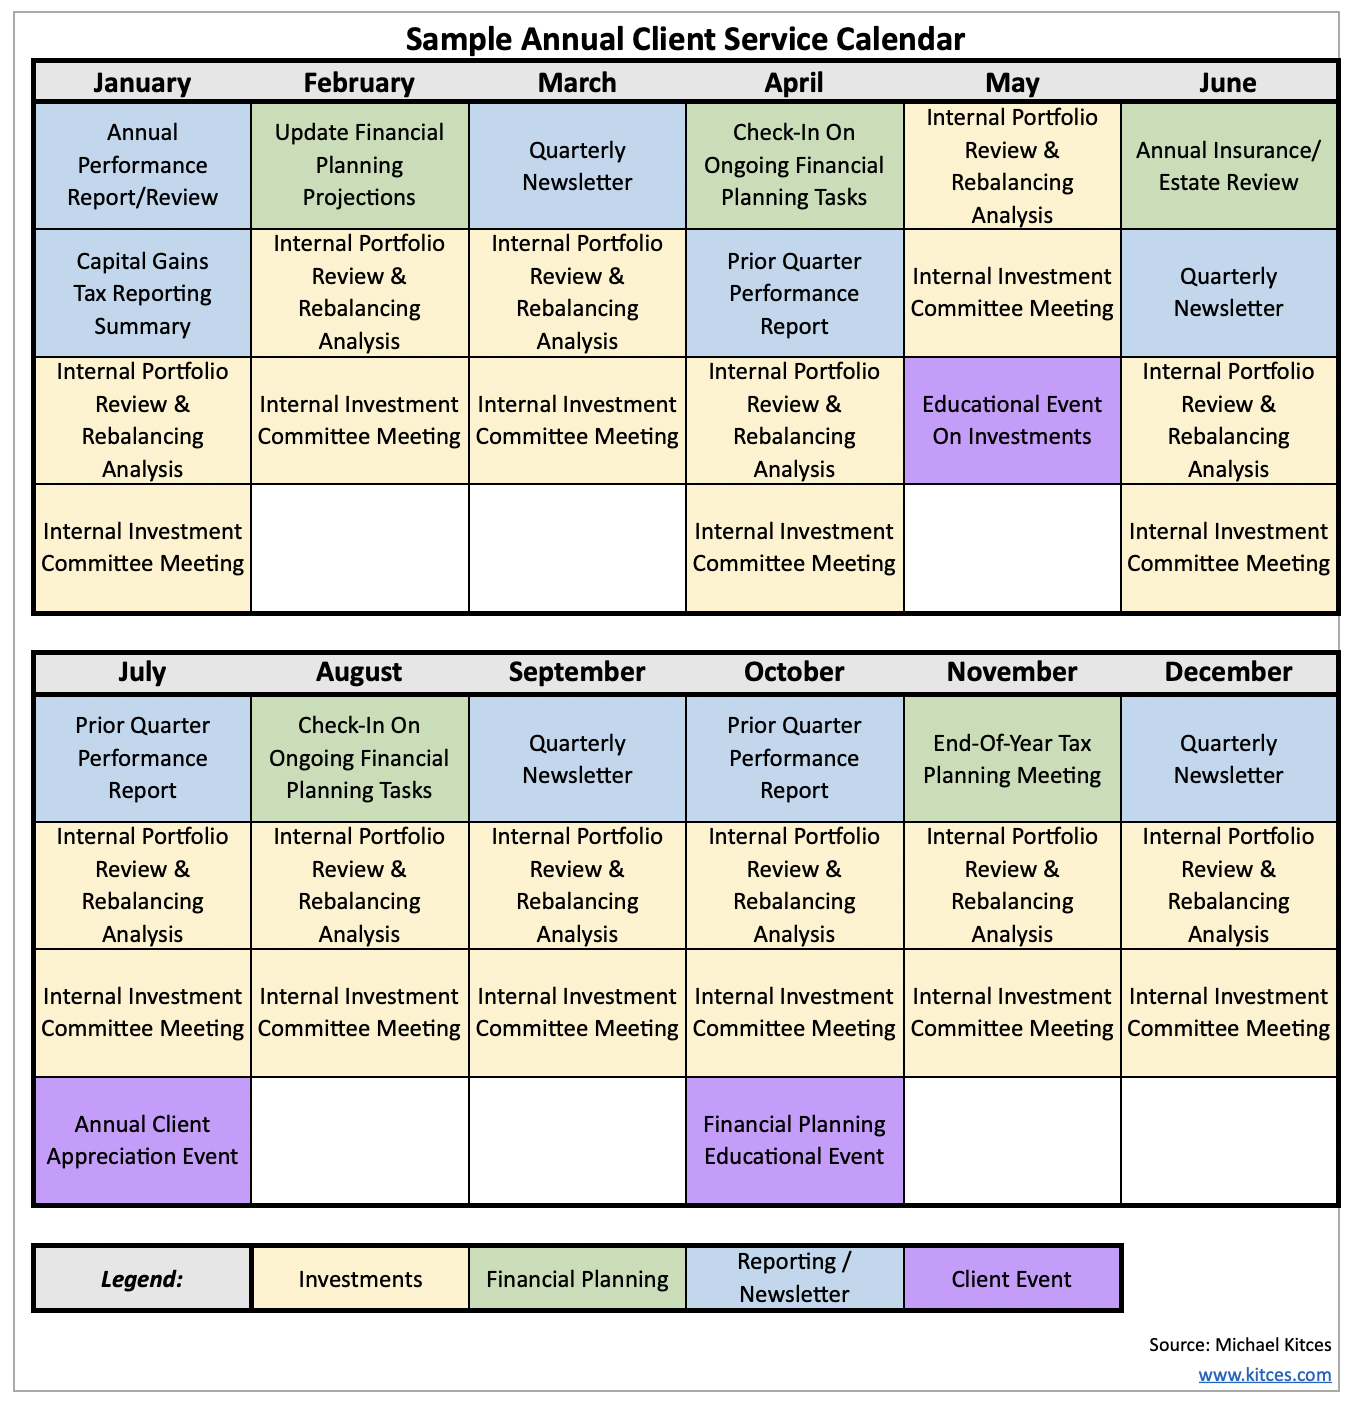 Building a Client Services Calendar